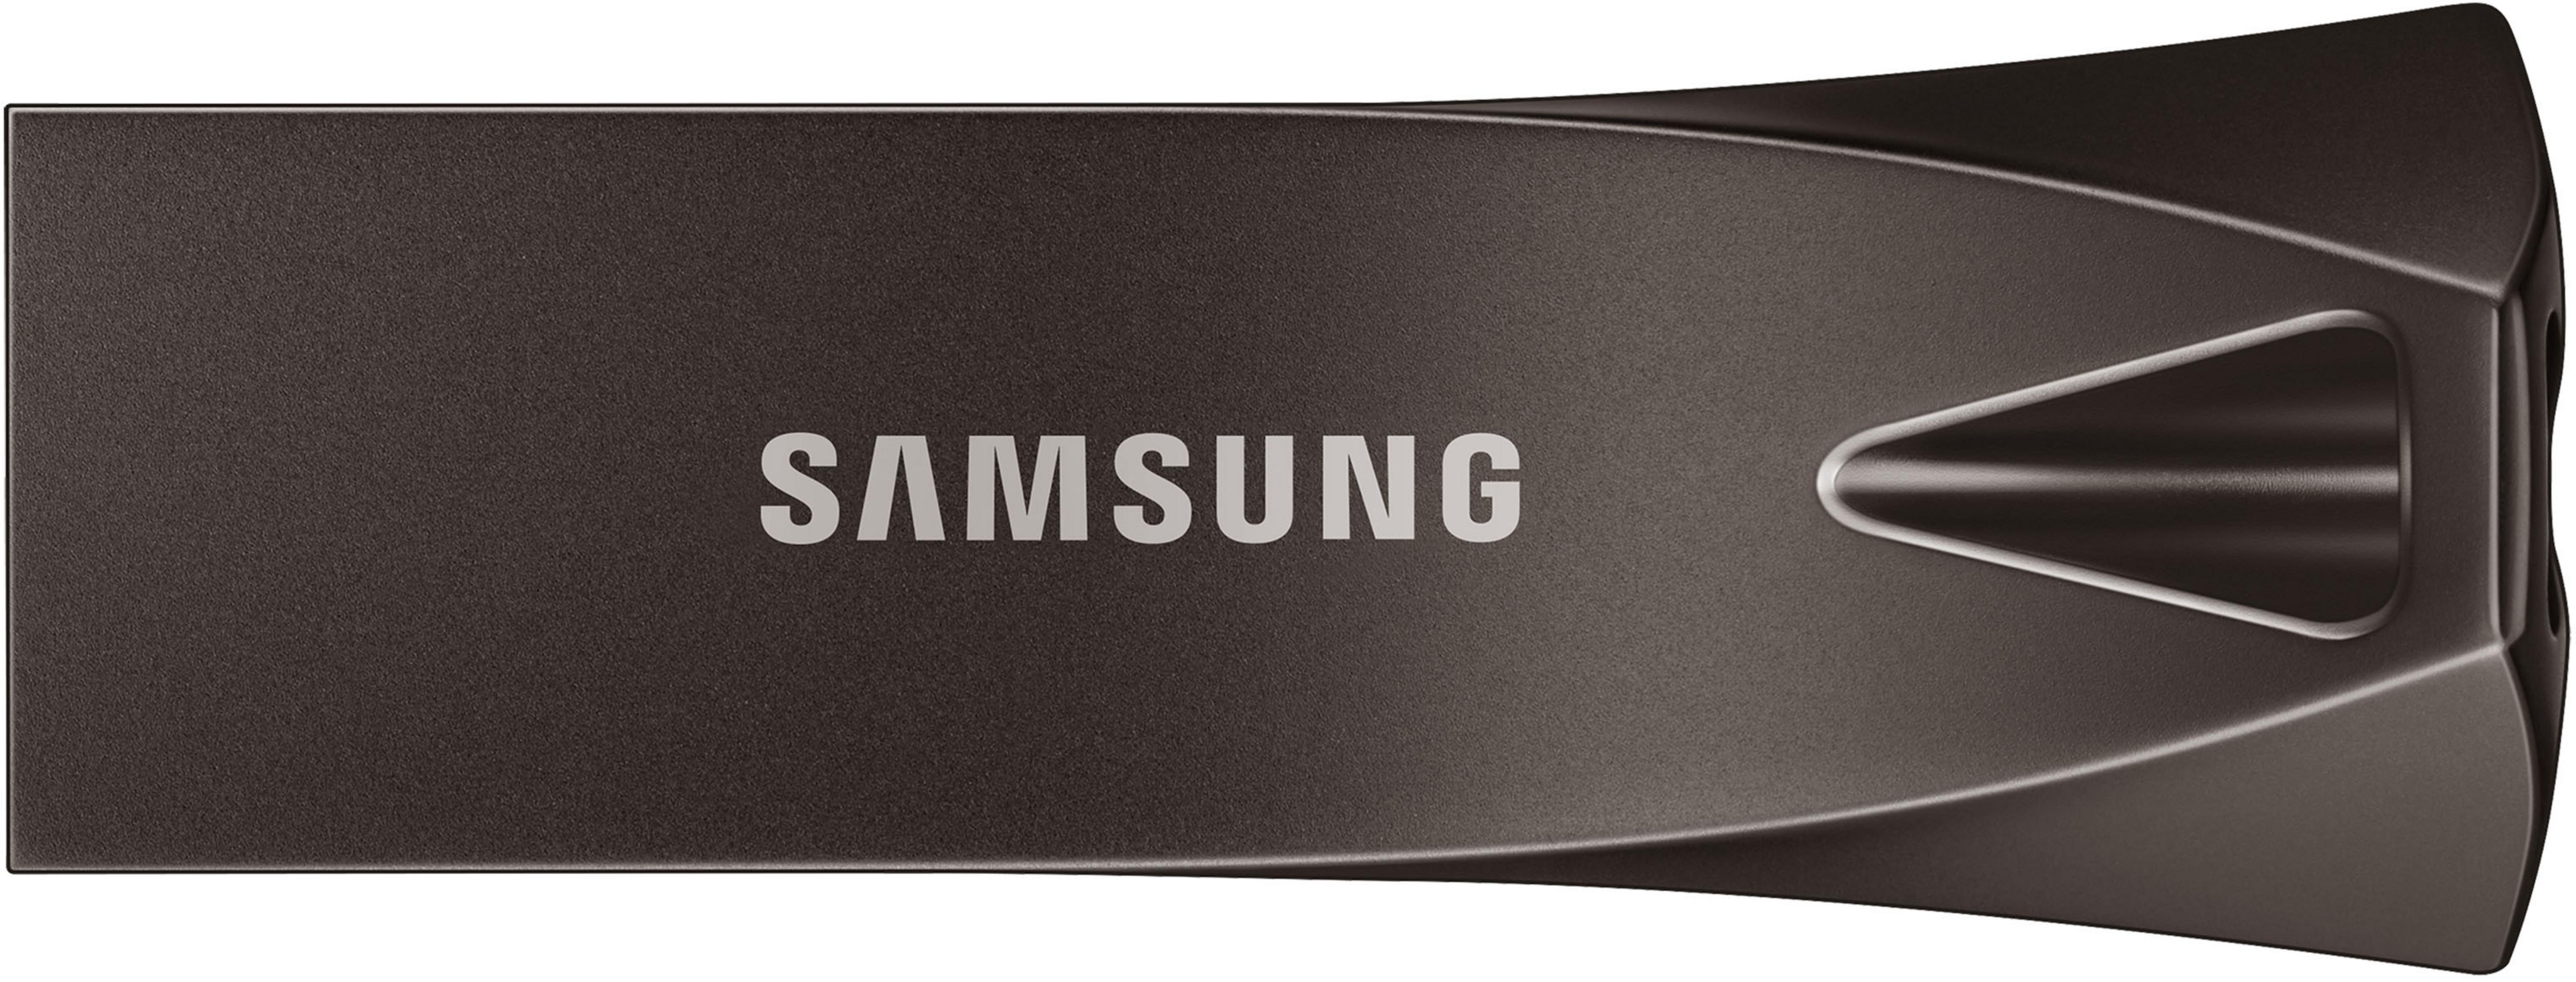 SAMSUNG MUF-128BE4/EU USB GB) USB-Stick Grau, (Titan 128 PLUS DRIVE 128GB TITAN BAR